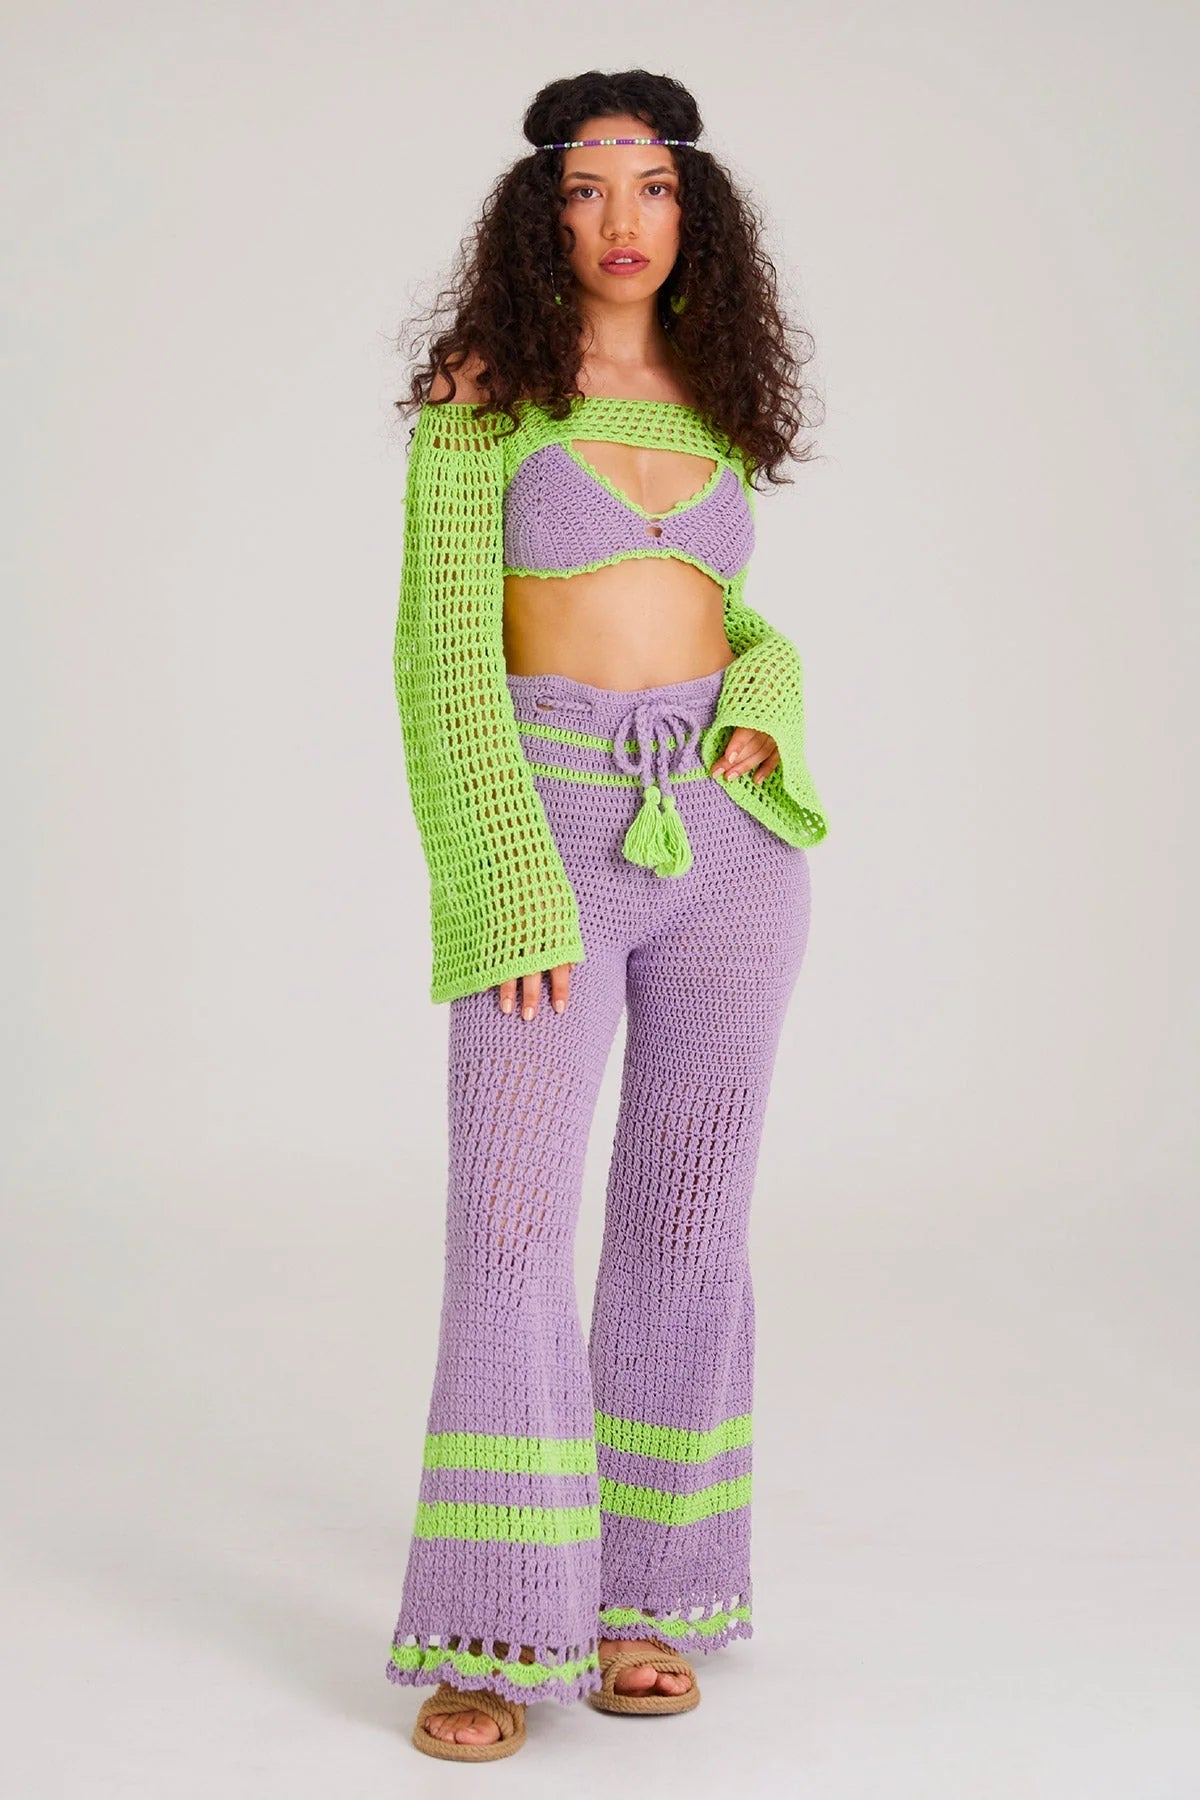 Crochet Coachella Outfit: Festival-Ready Fashion Guide - Smyrna Collective